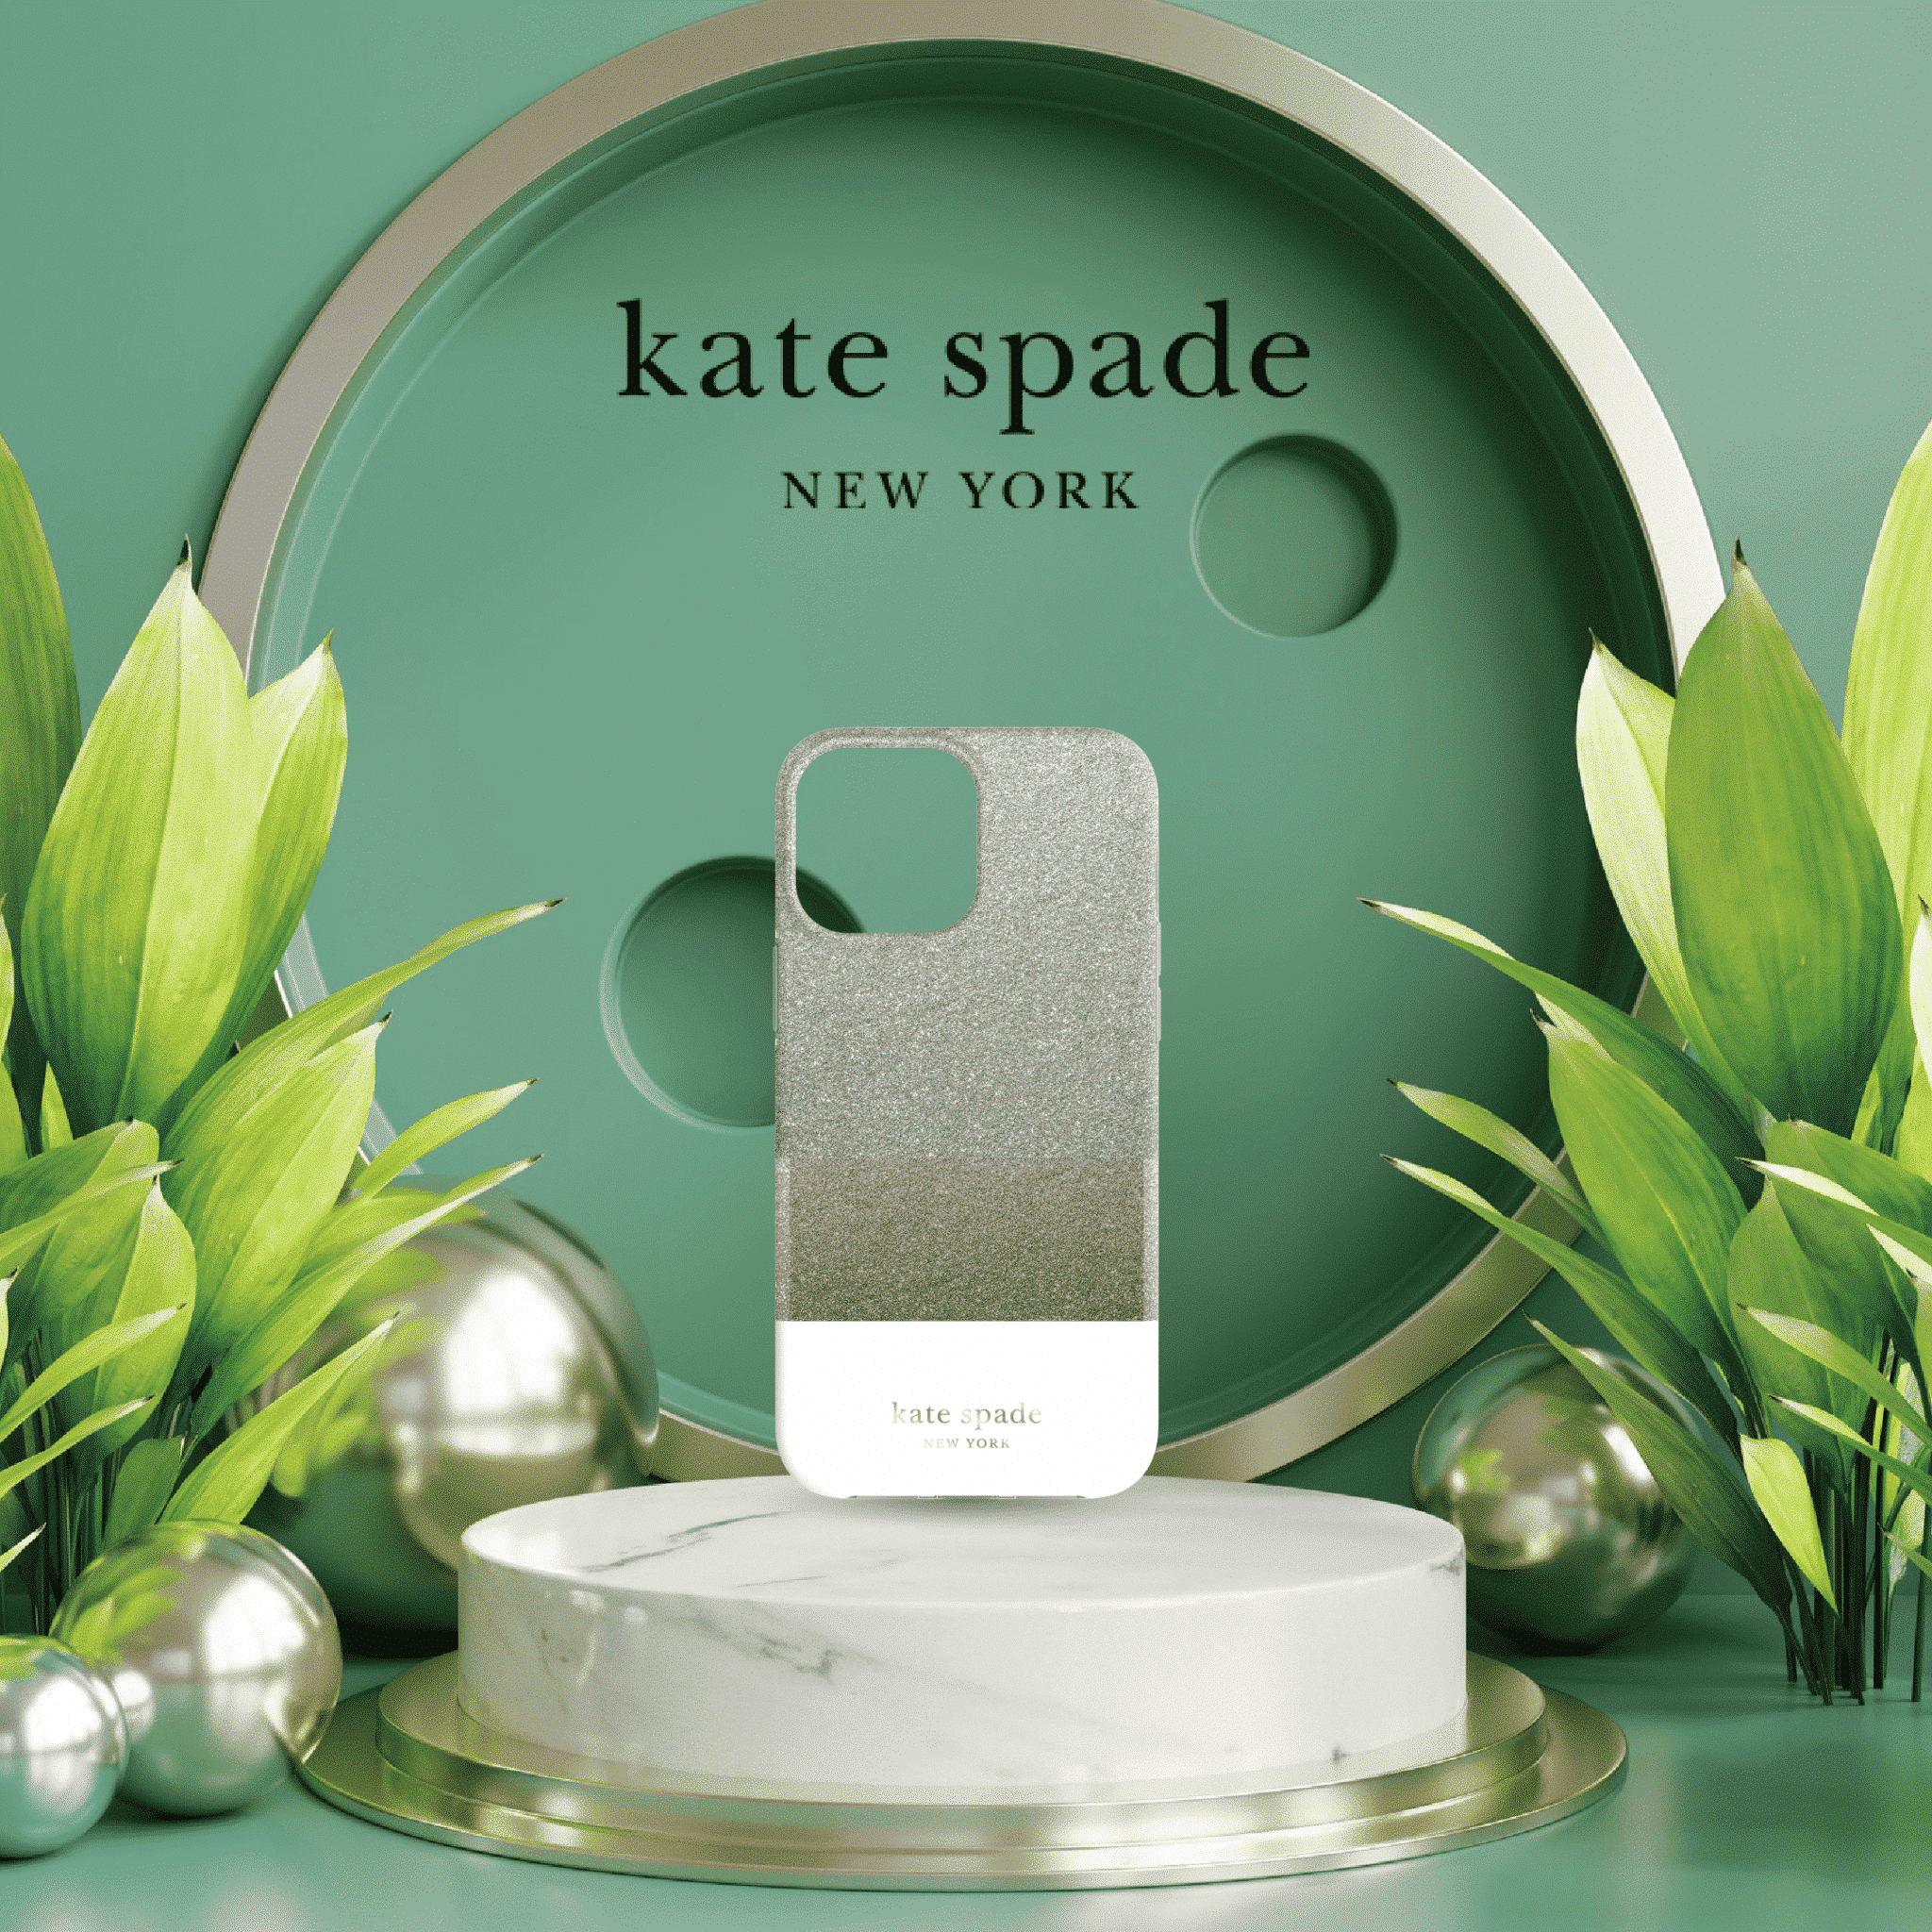 เคส Kate Spade New York รุ่น Protective Hardshell Case - iPhone 13 Pro Max - Glitter Block White/Silver Glitter/Gold Glitter